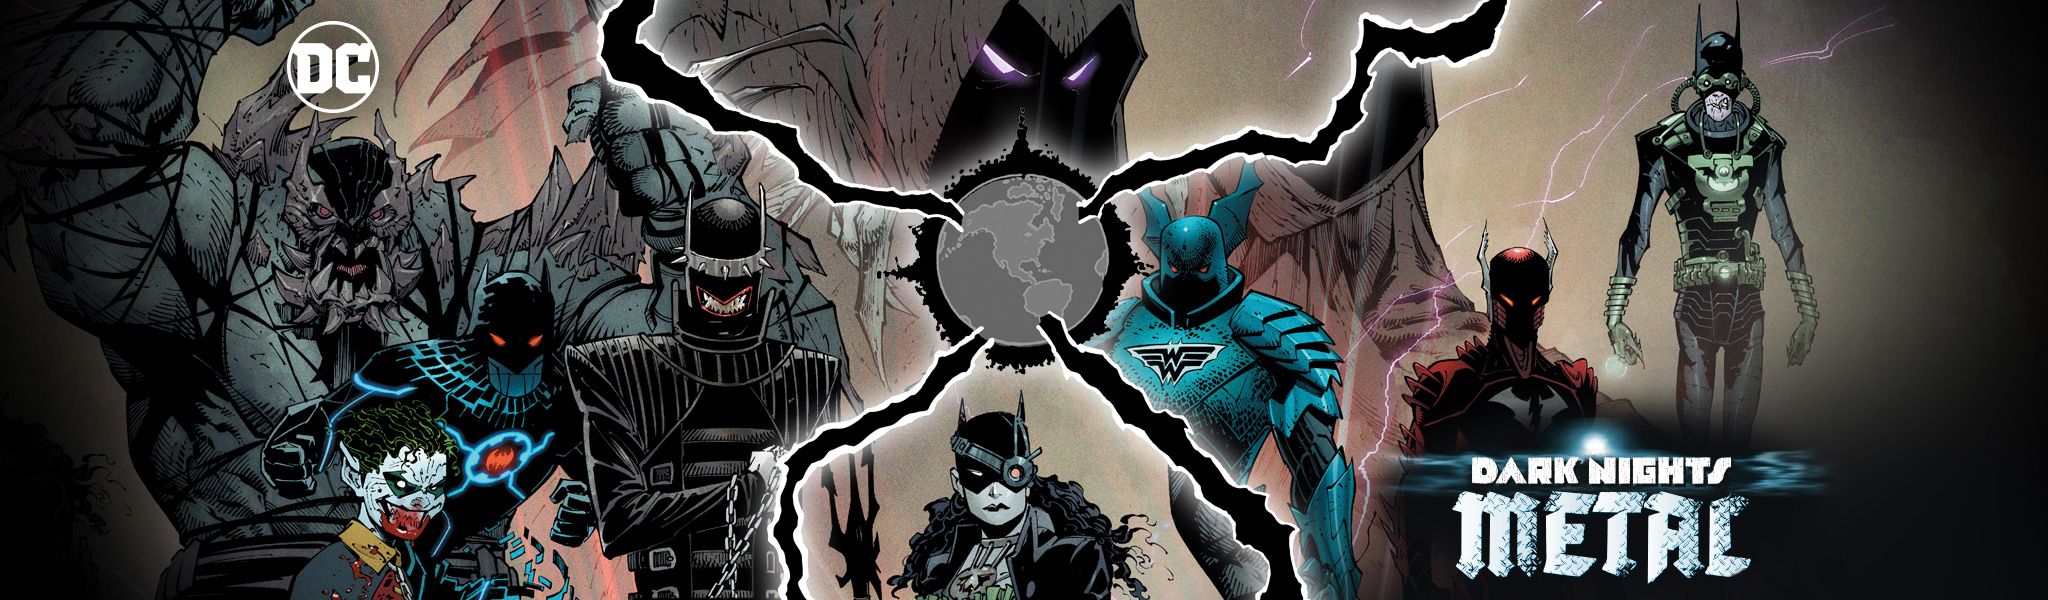 蝙蝠俠漫畫編劇 Scott Snyder談論「黑暗多元宇宙」的定位